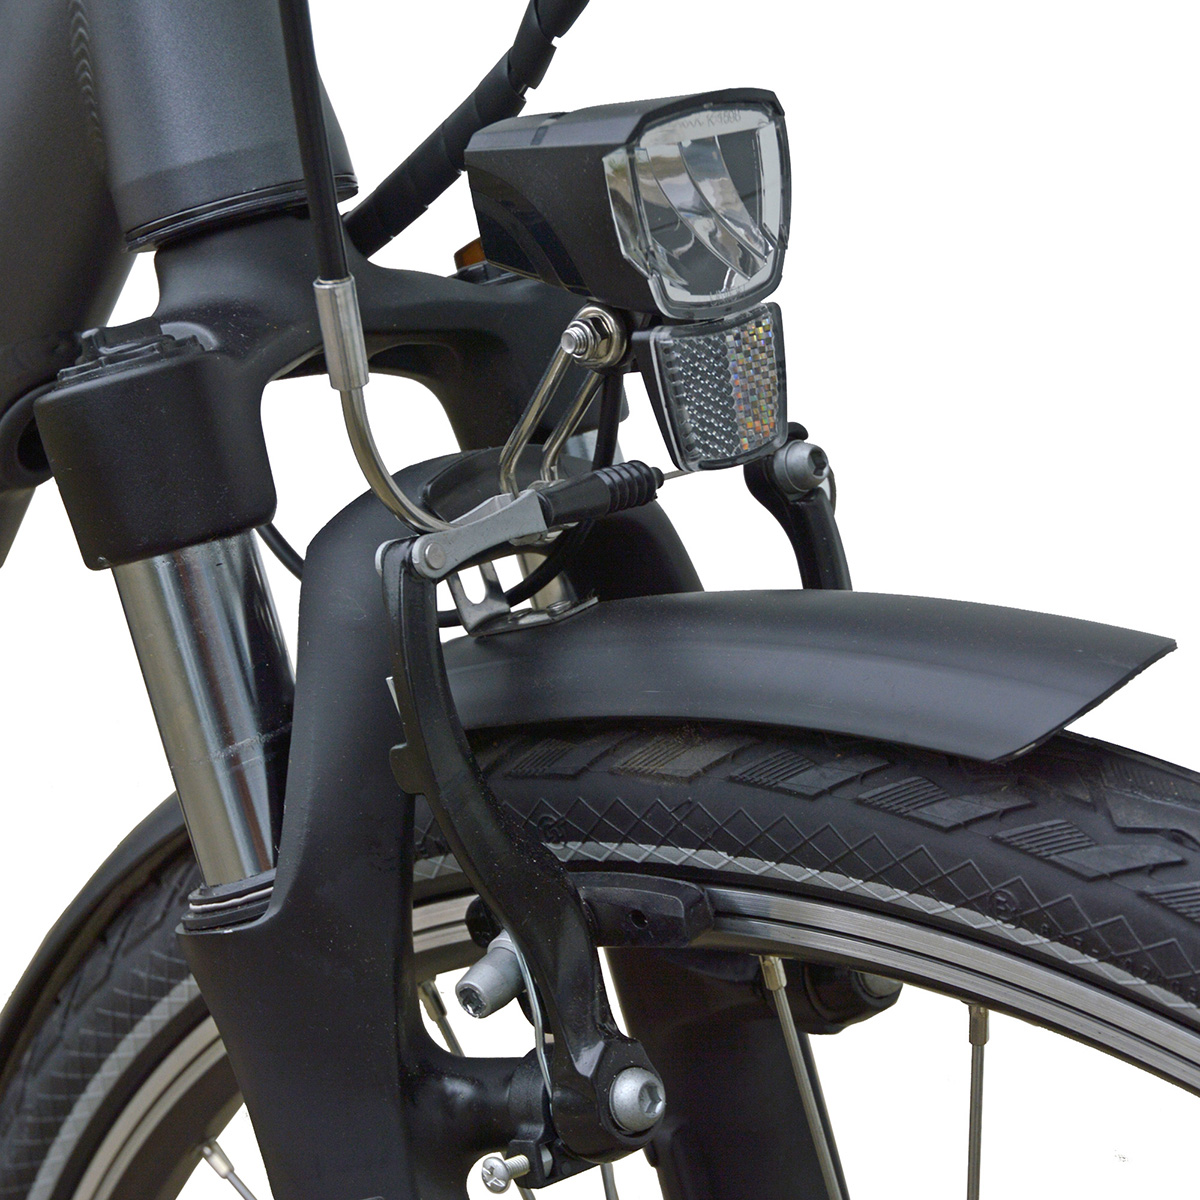 Rahmenhöhe: Zoll, cm, Citybike 470 Wh, VILLETTE AM dunkelgrau) (Laufradgröße: 28 Damen-Rad, Le 48 Bonheur